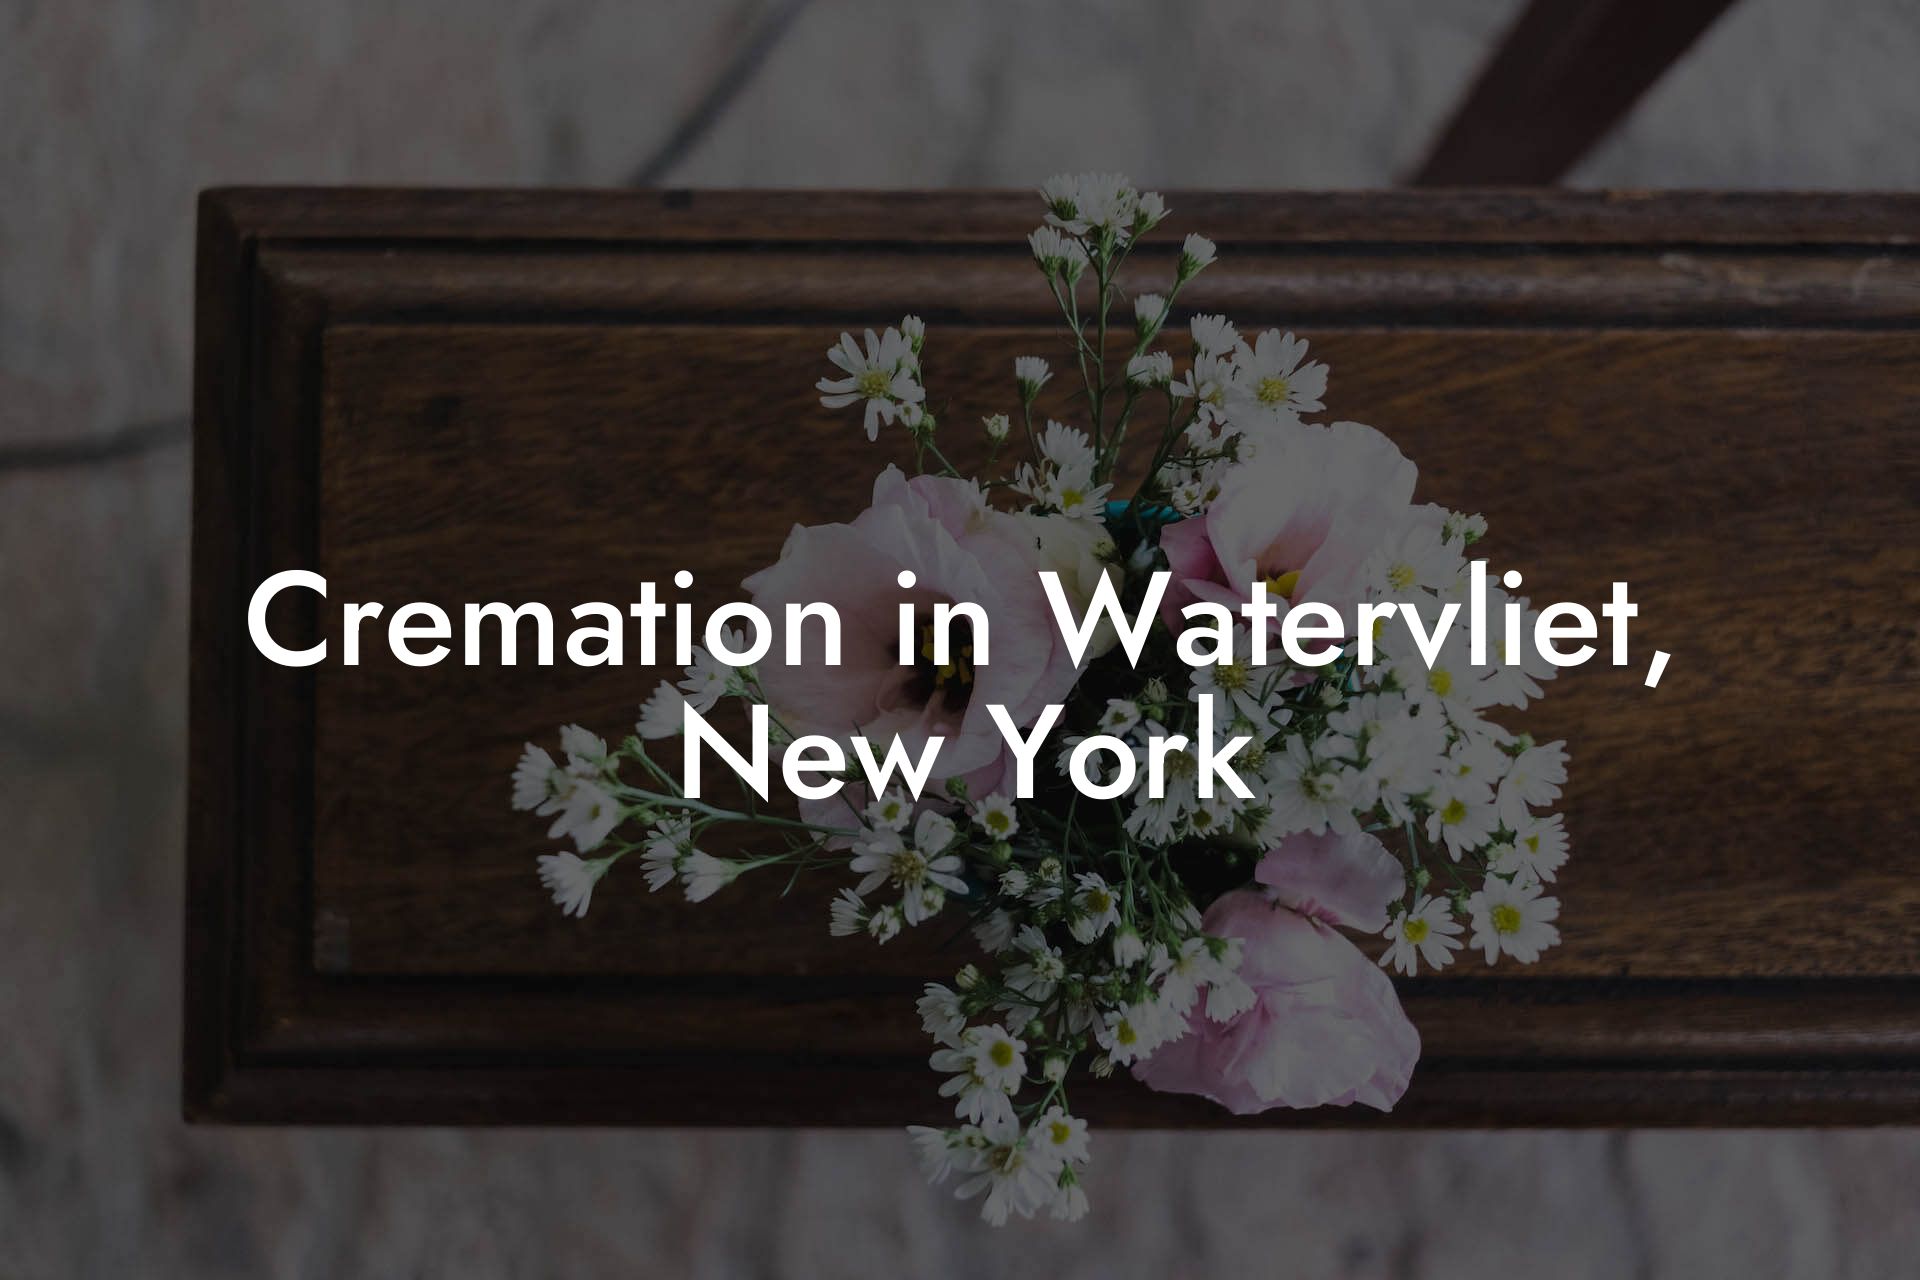 Cremation in Watervliet, New York